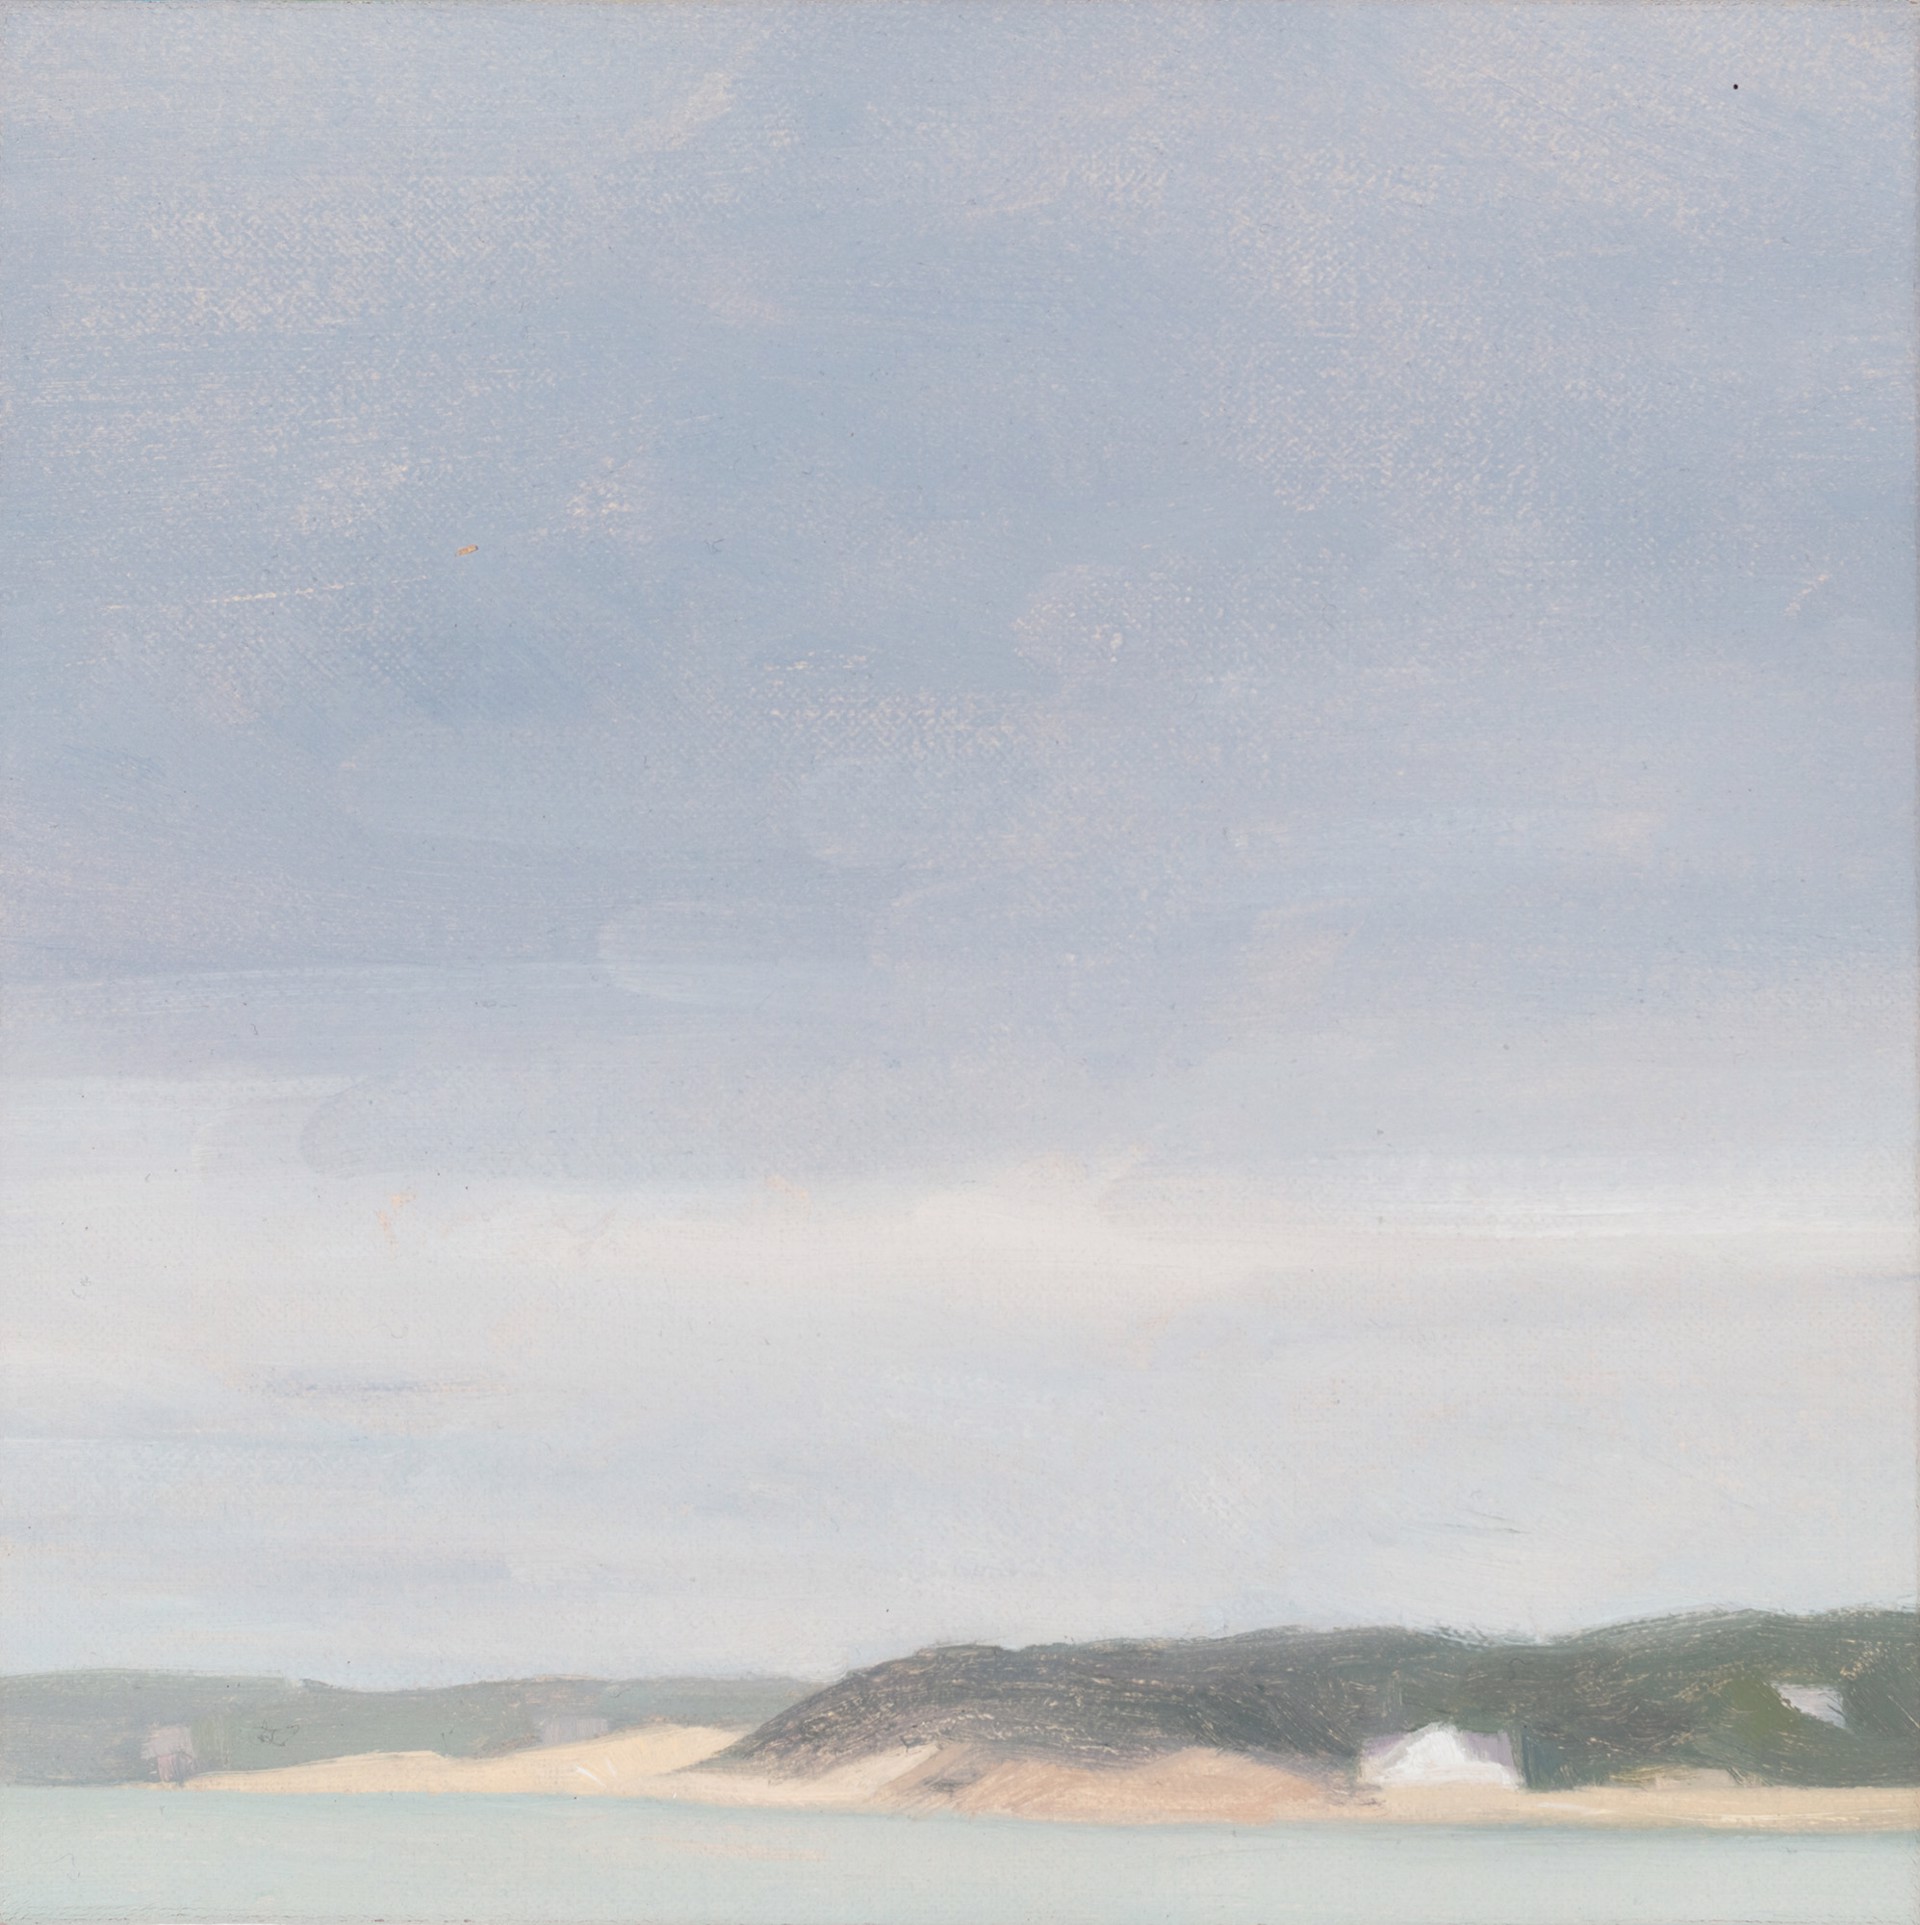 Loagy Bay by Diana Horowitz